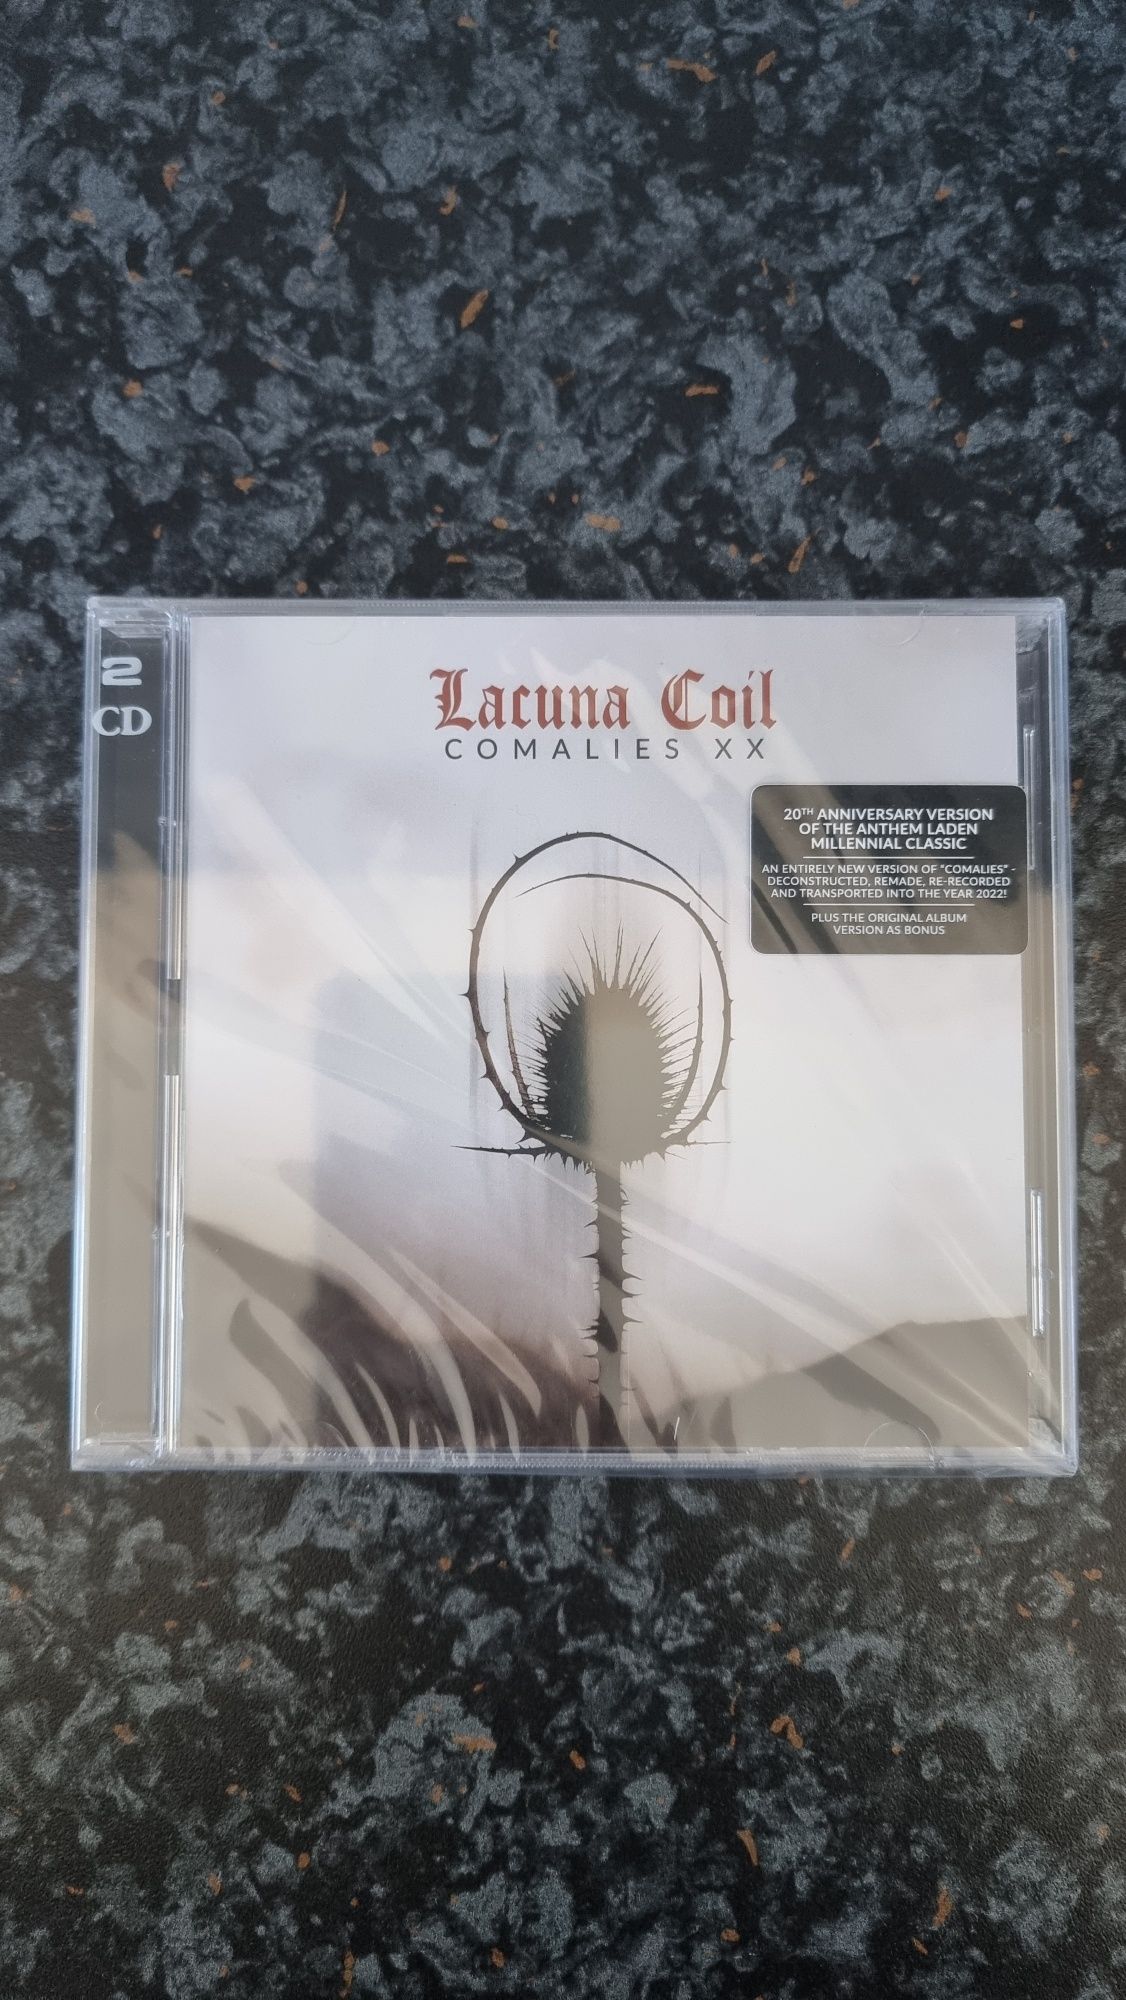 Lacuna Coil Comalies XX 2CD